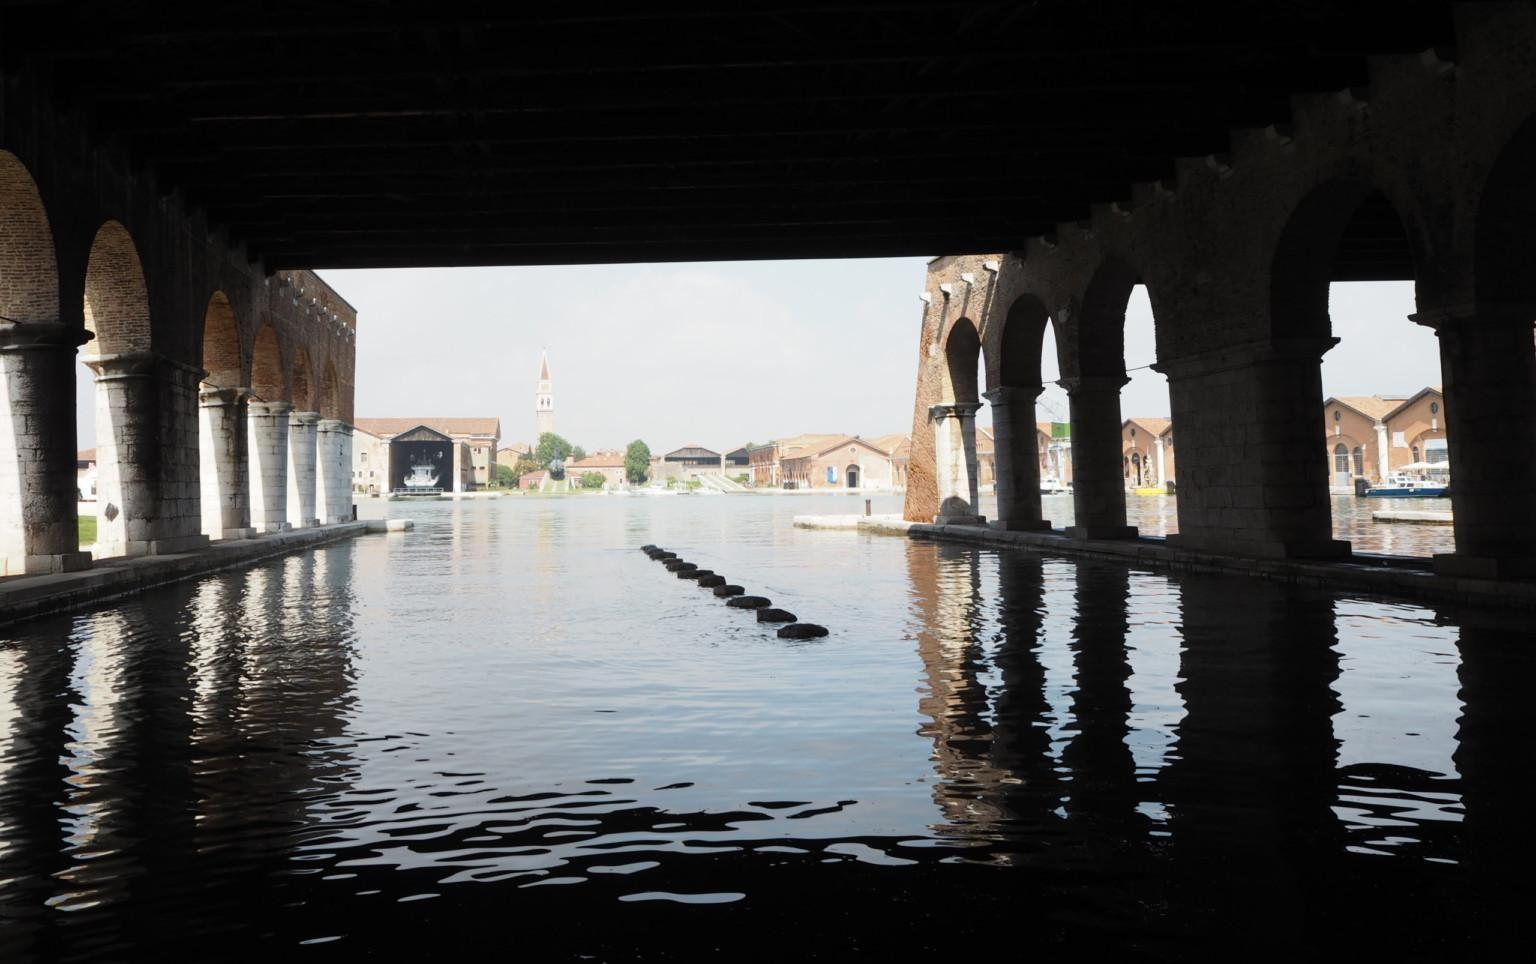 En bild i färg av utställningsområdet och gamla skeppsvarvet Arsenale i Venedig. På bilden kan vi se vatten som täcker nedre delen av bilden. På vänster och höger sida av bilden sträcker sig stora mörka pelare upp mot himlen. 